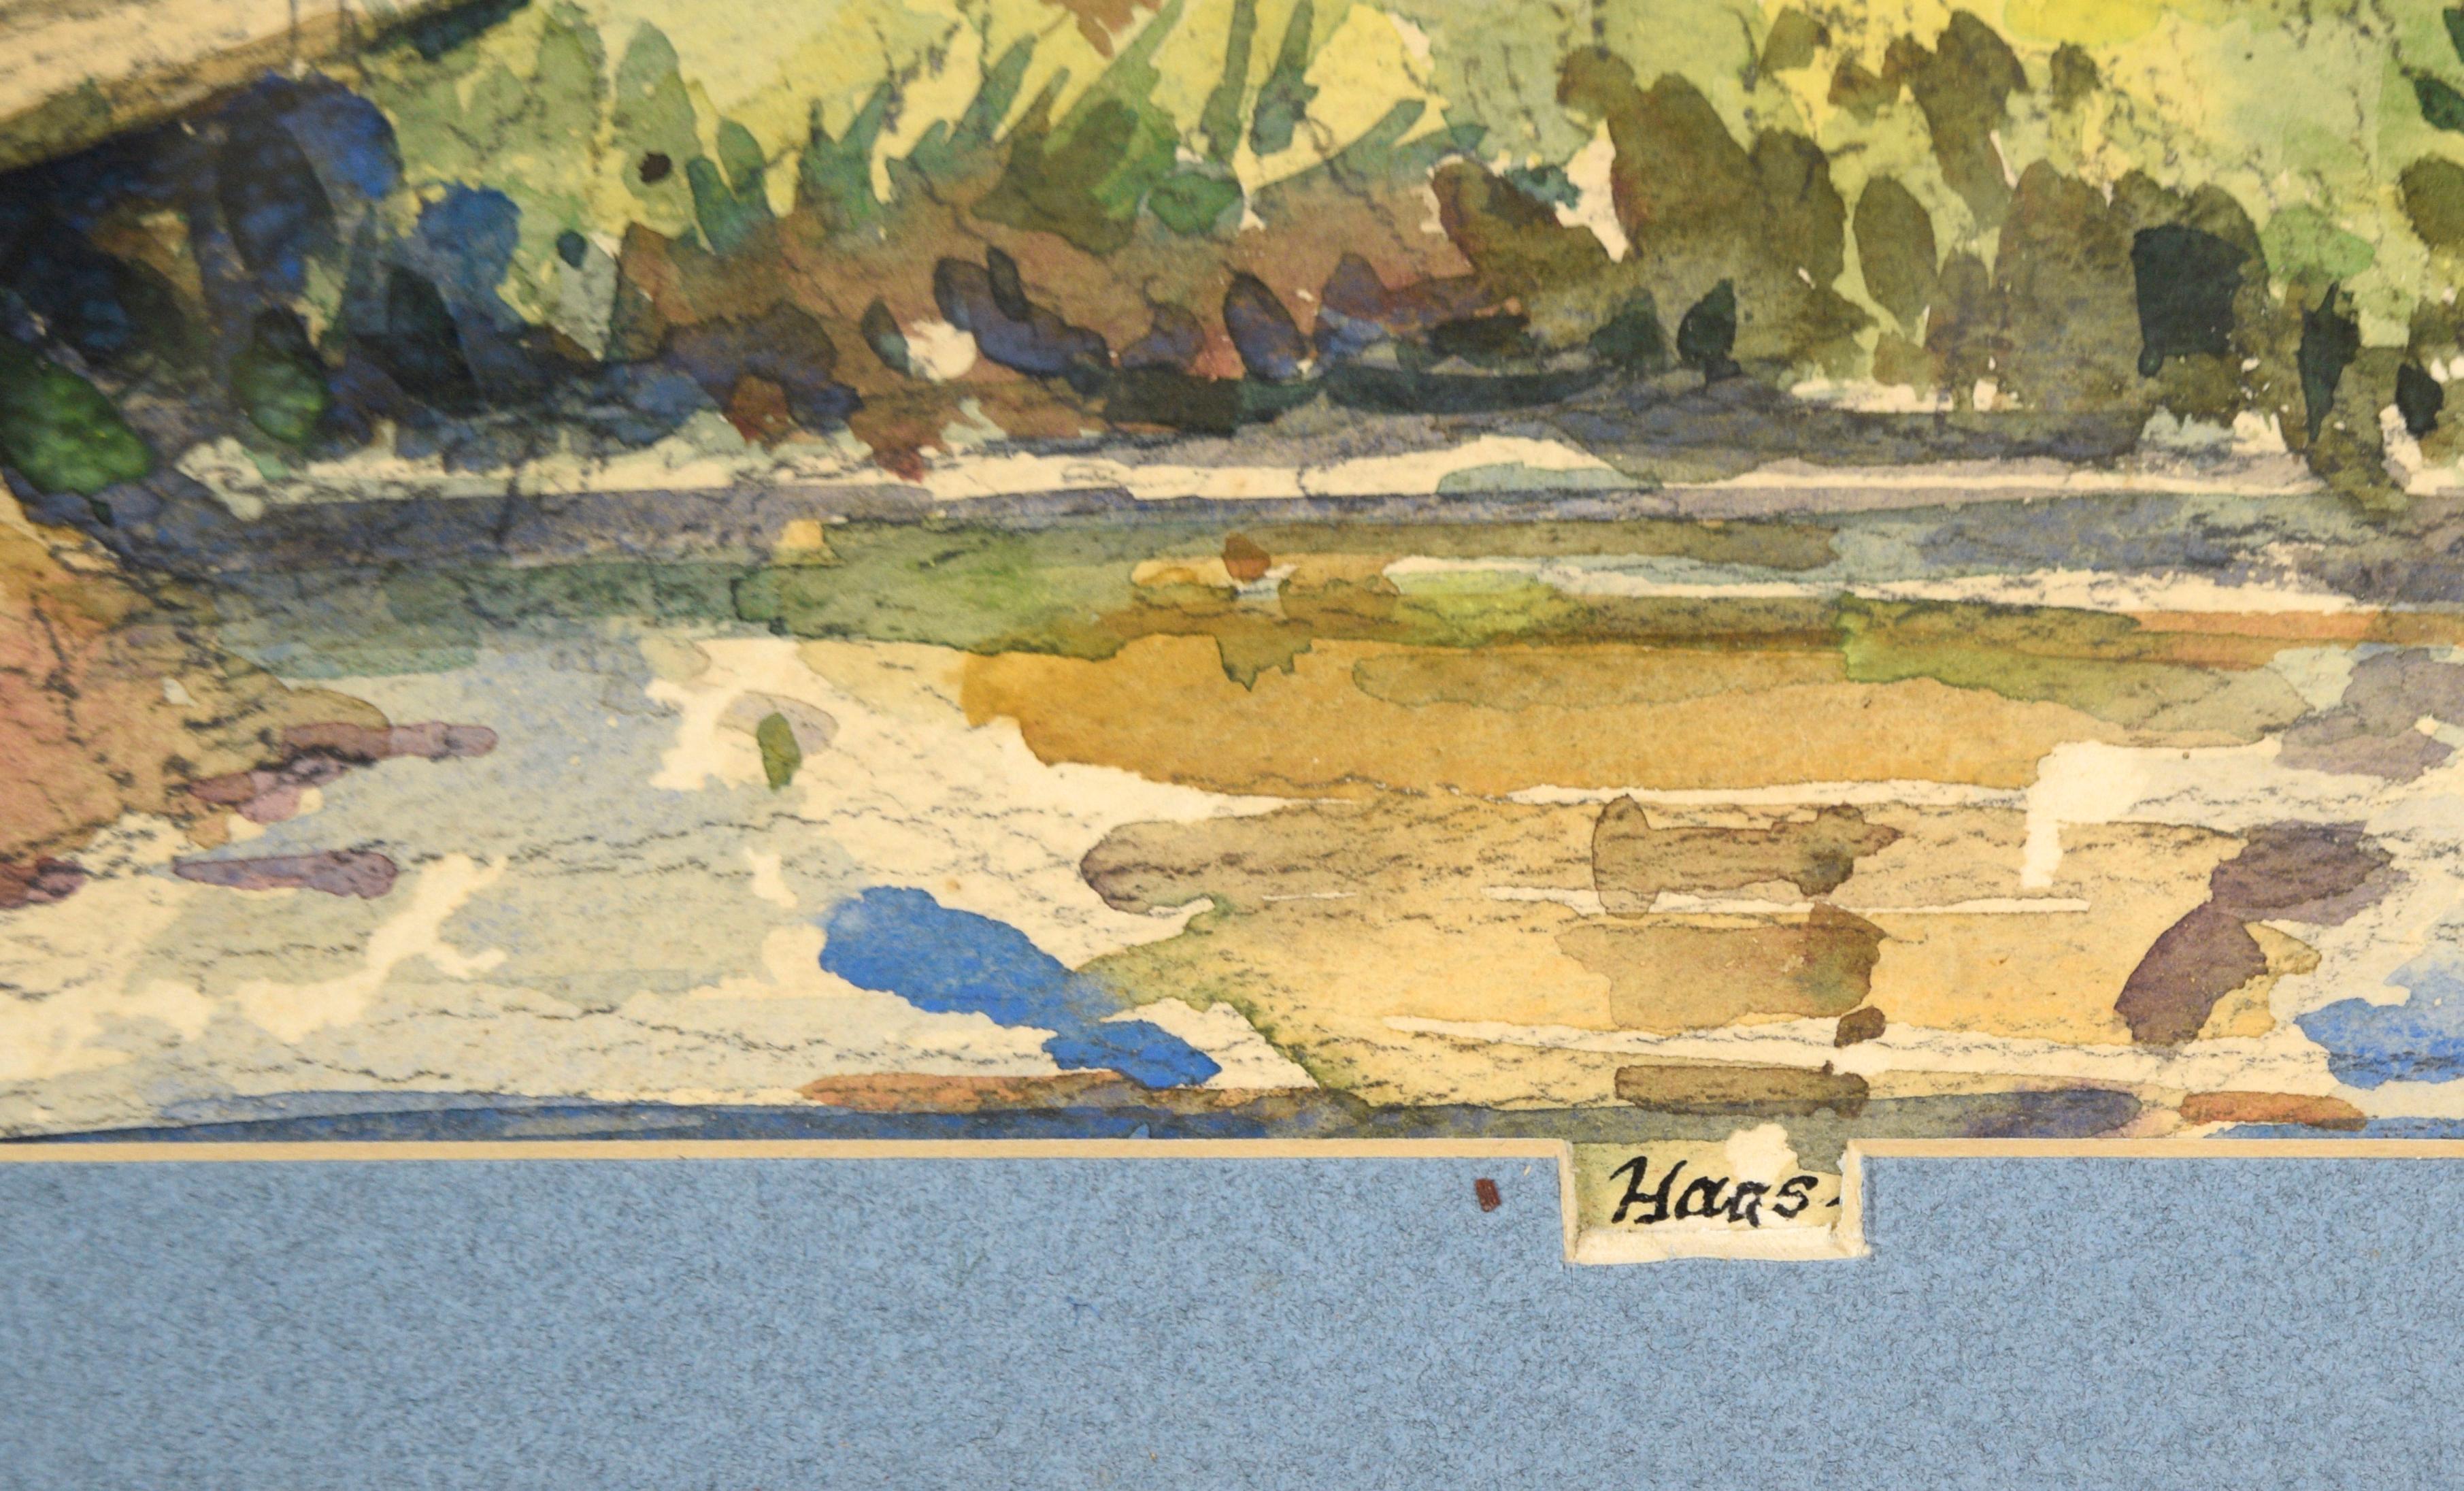 Paysage de ferme idyllique de l'artiste californien Edwin Haas (américain, 1927-2010). Une grange avec une fenêtre à claire-voie est l'élément principal de cette pièce. Il est situé dans un paysage luxuriant, plein d'herbe, avec un petit ruisseau